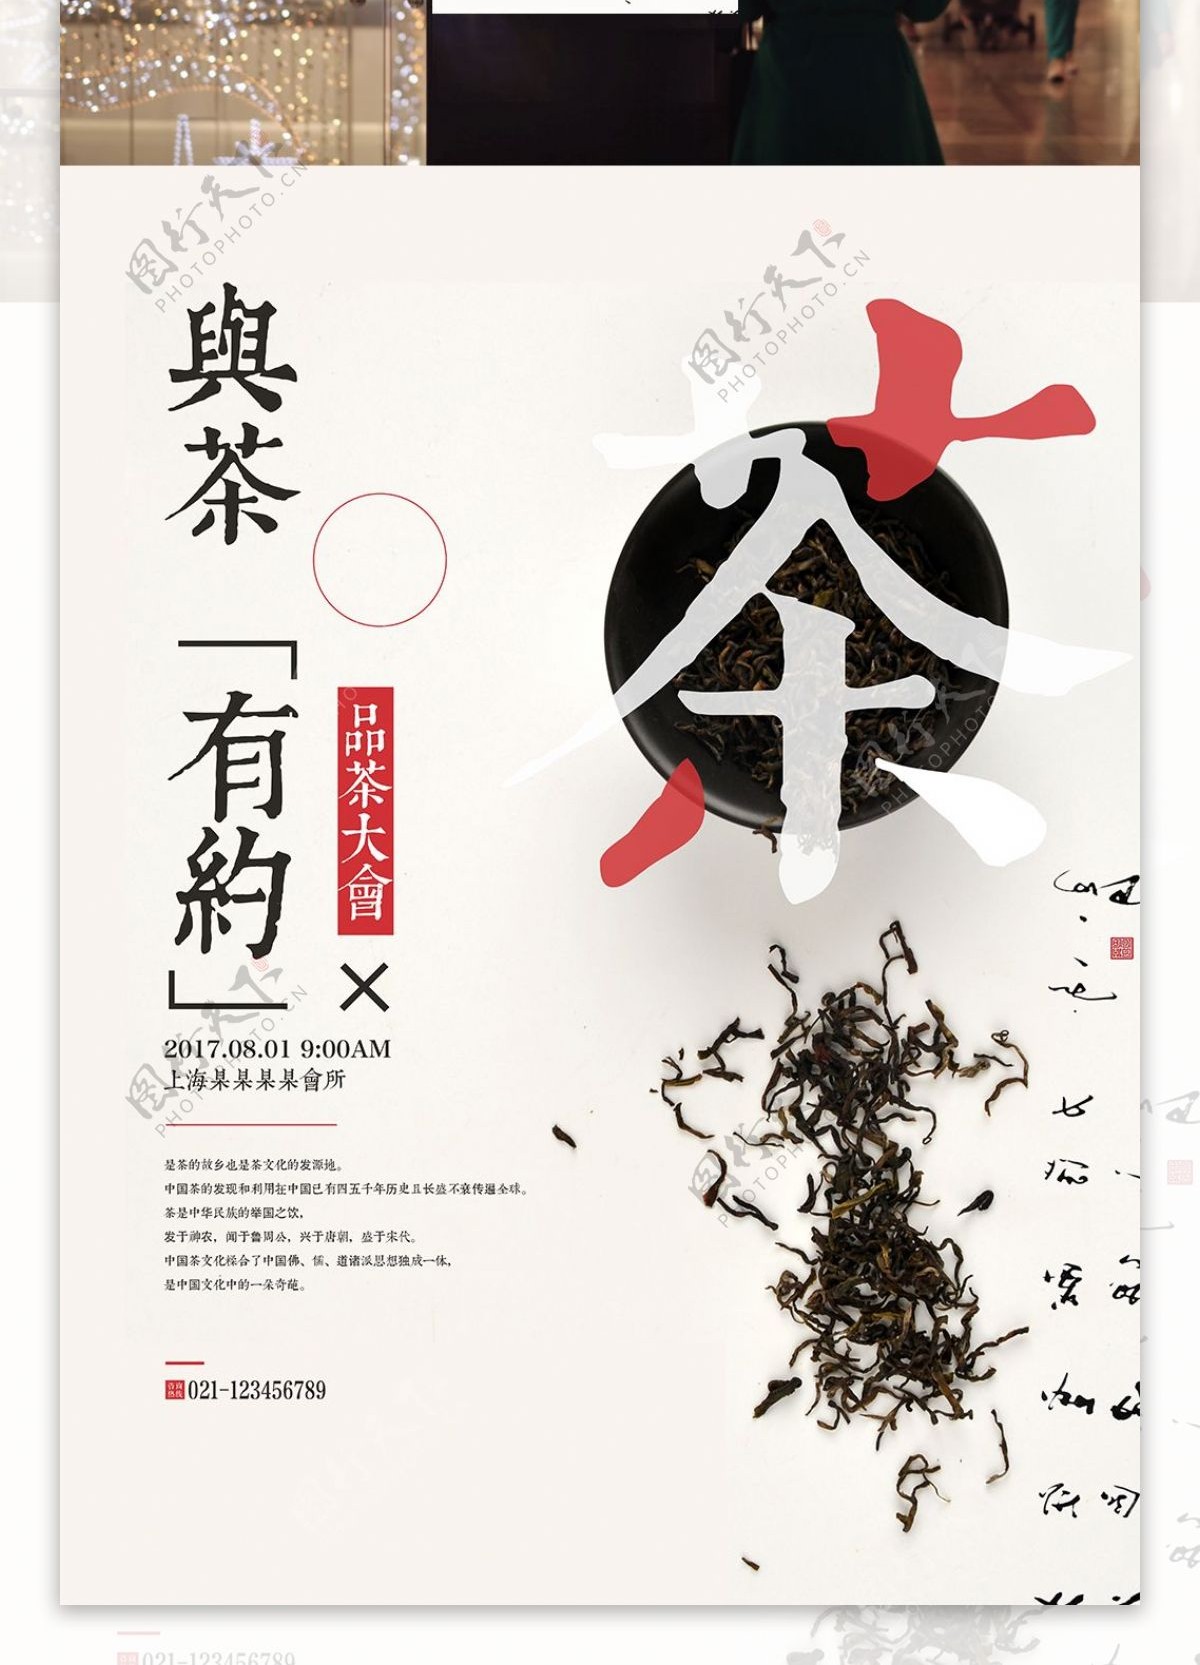 创意字体设计茶品茶大会海报